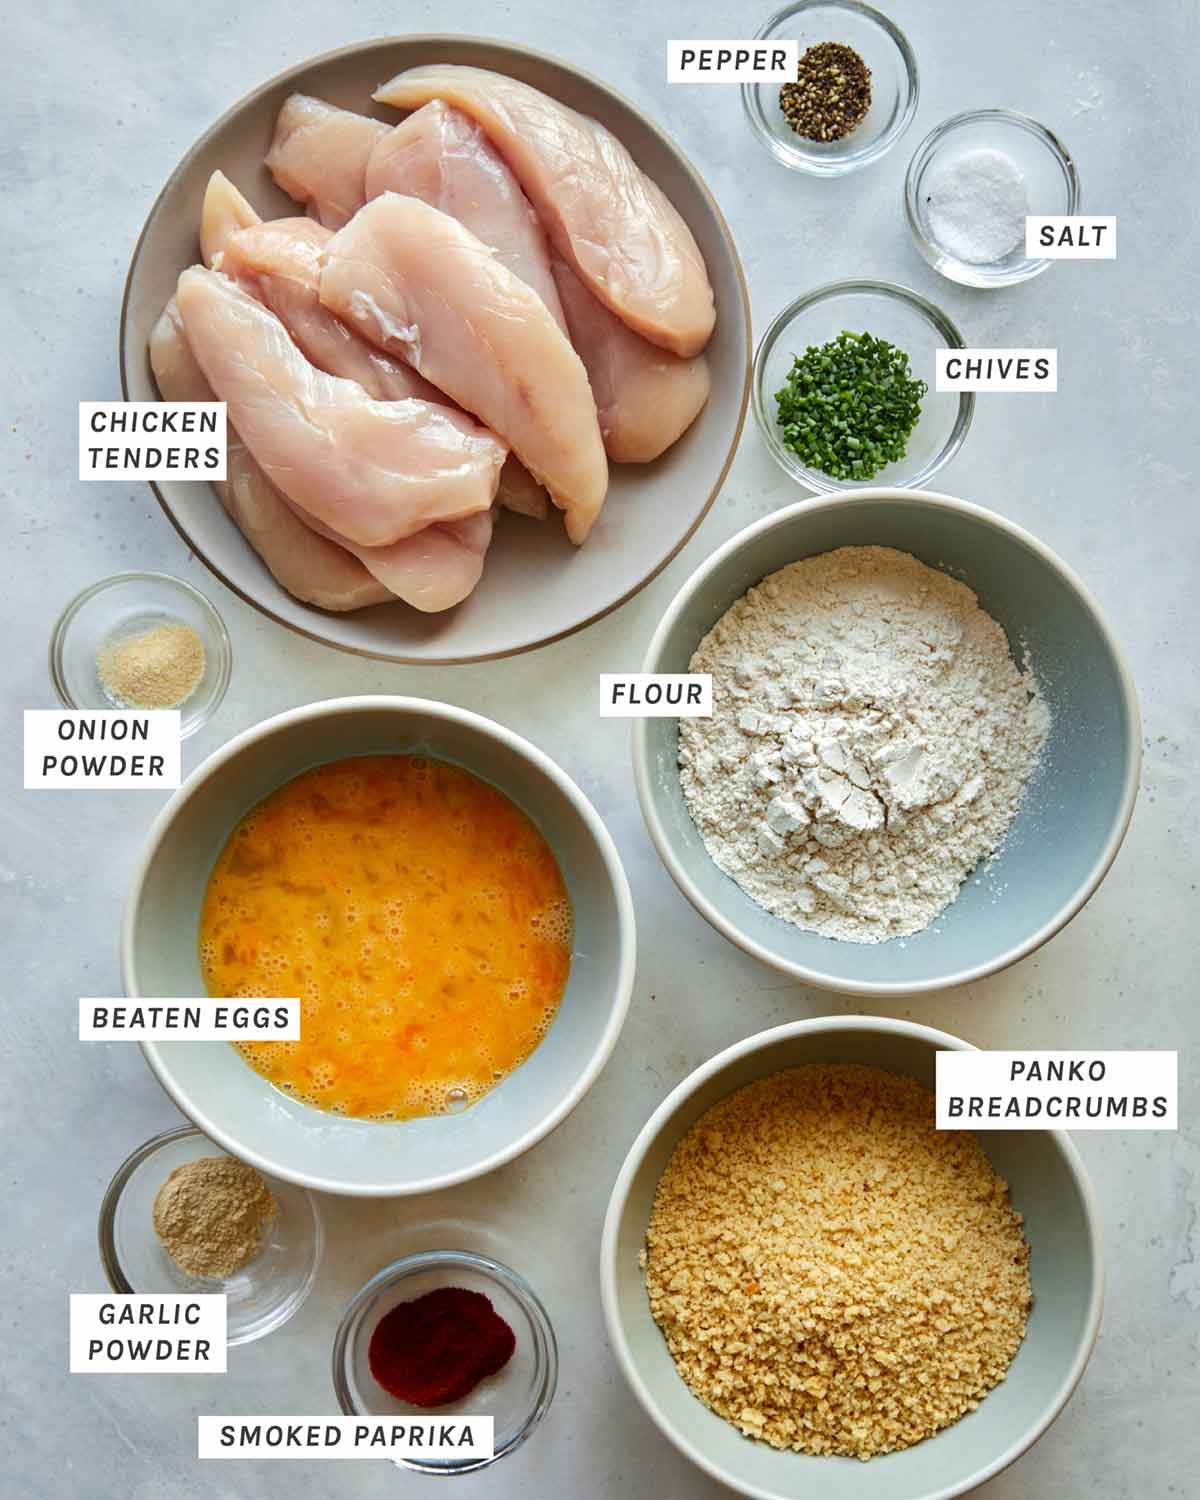 Ingredients to make air fryer chicken tenders.